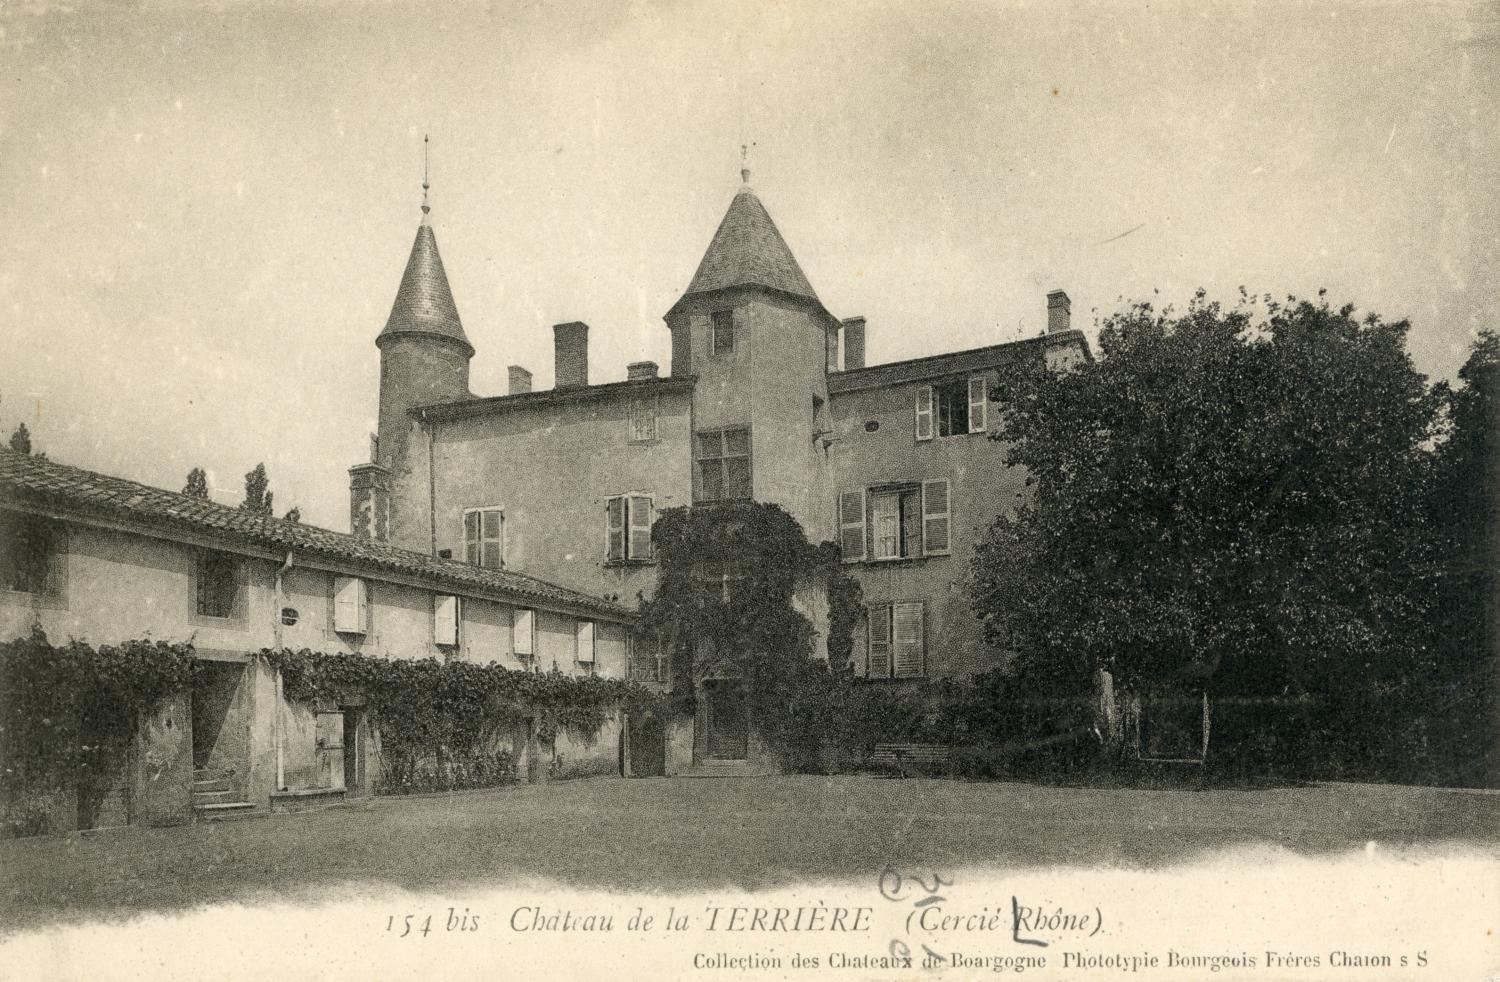 Château de la Terrière (Cercié, Rhône)